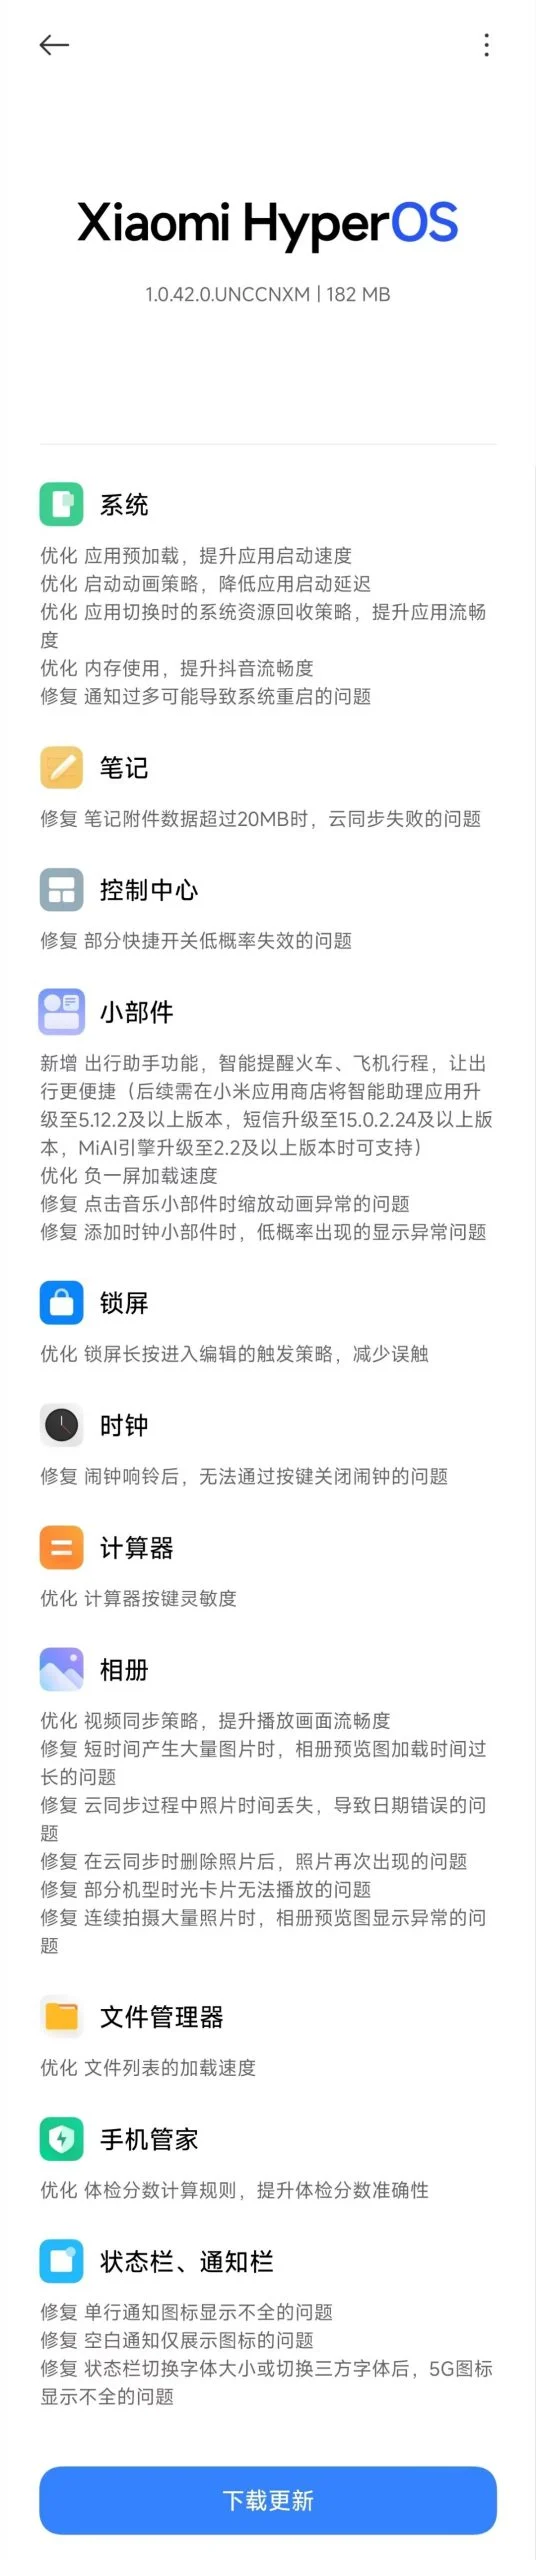 (Źródło zdjęcia: Xiaomi via Gizmochina)